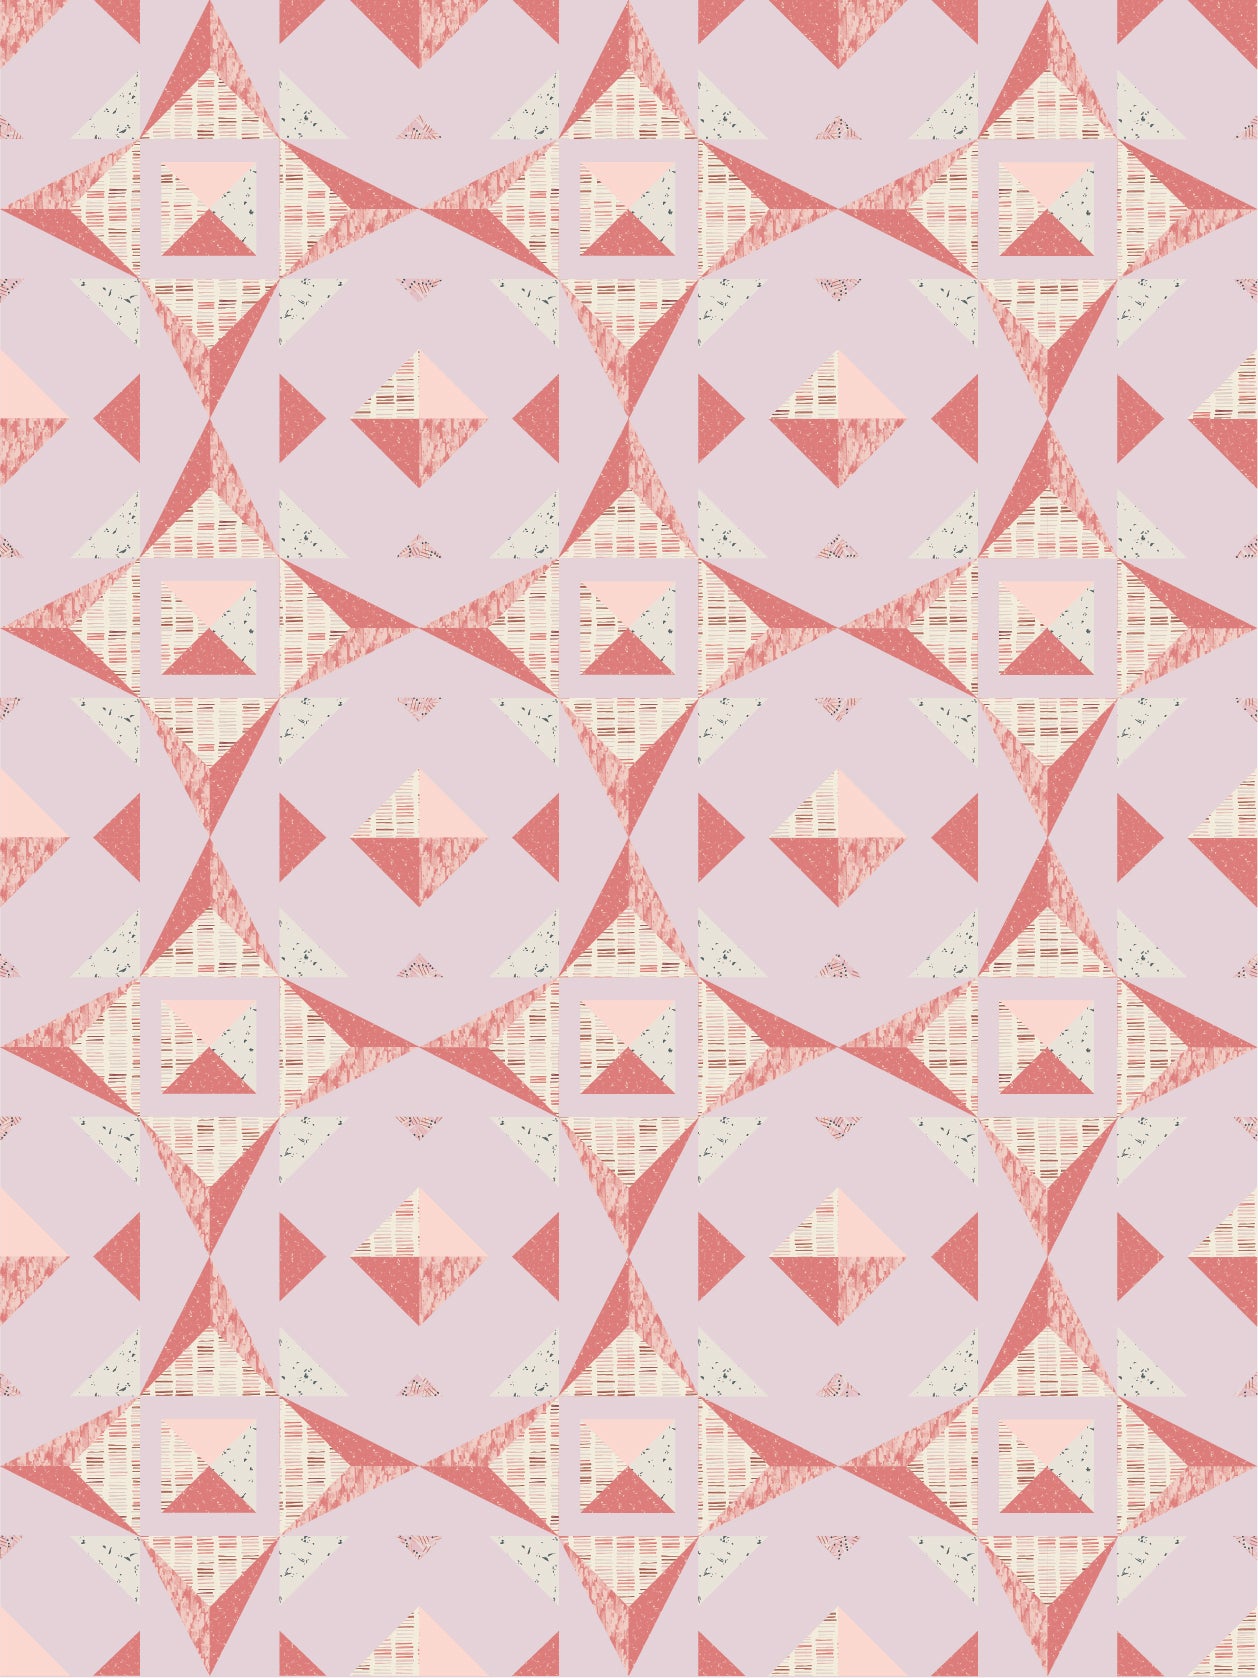 Quilt Pattern - Christalline By Alderwood Studios